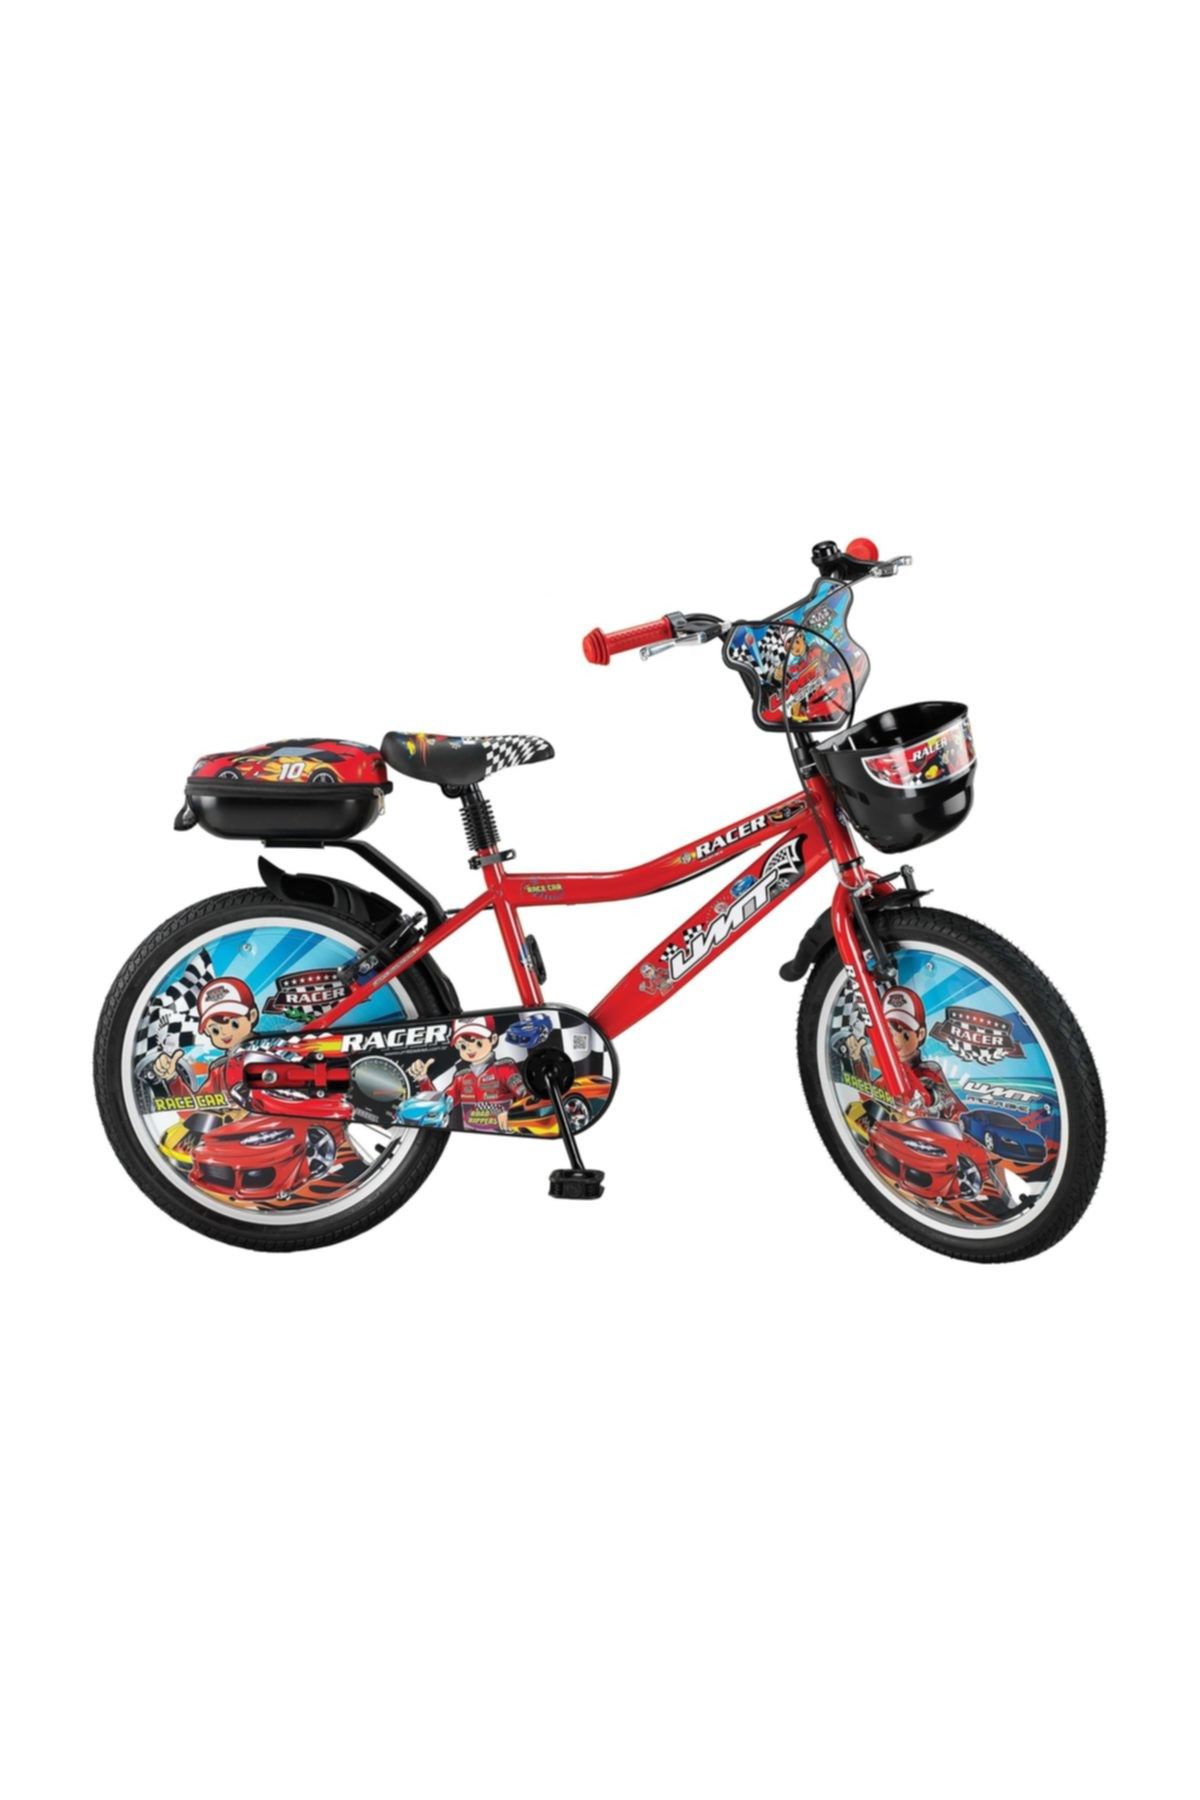 Ümit 2048 Racer 20 Jant Bisiklet 2018 Model 003 MAVİ